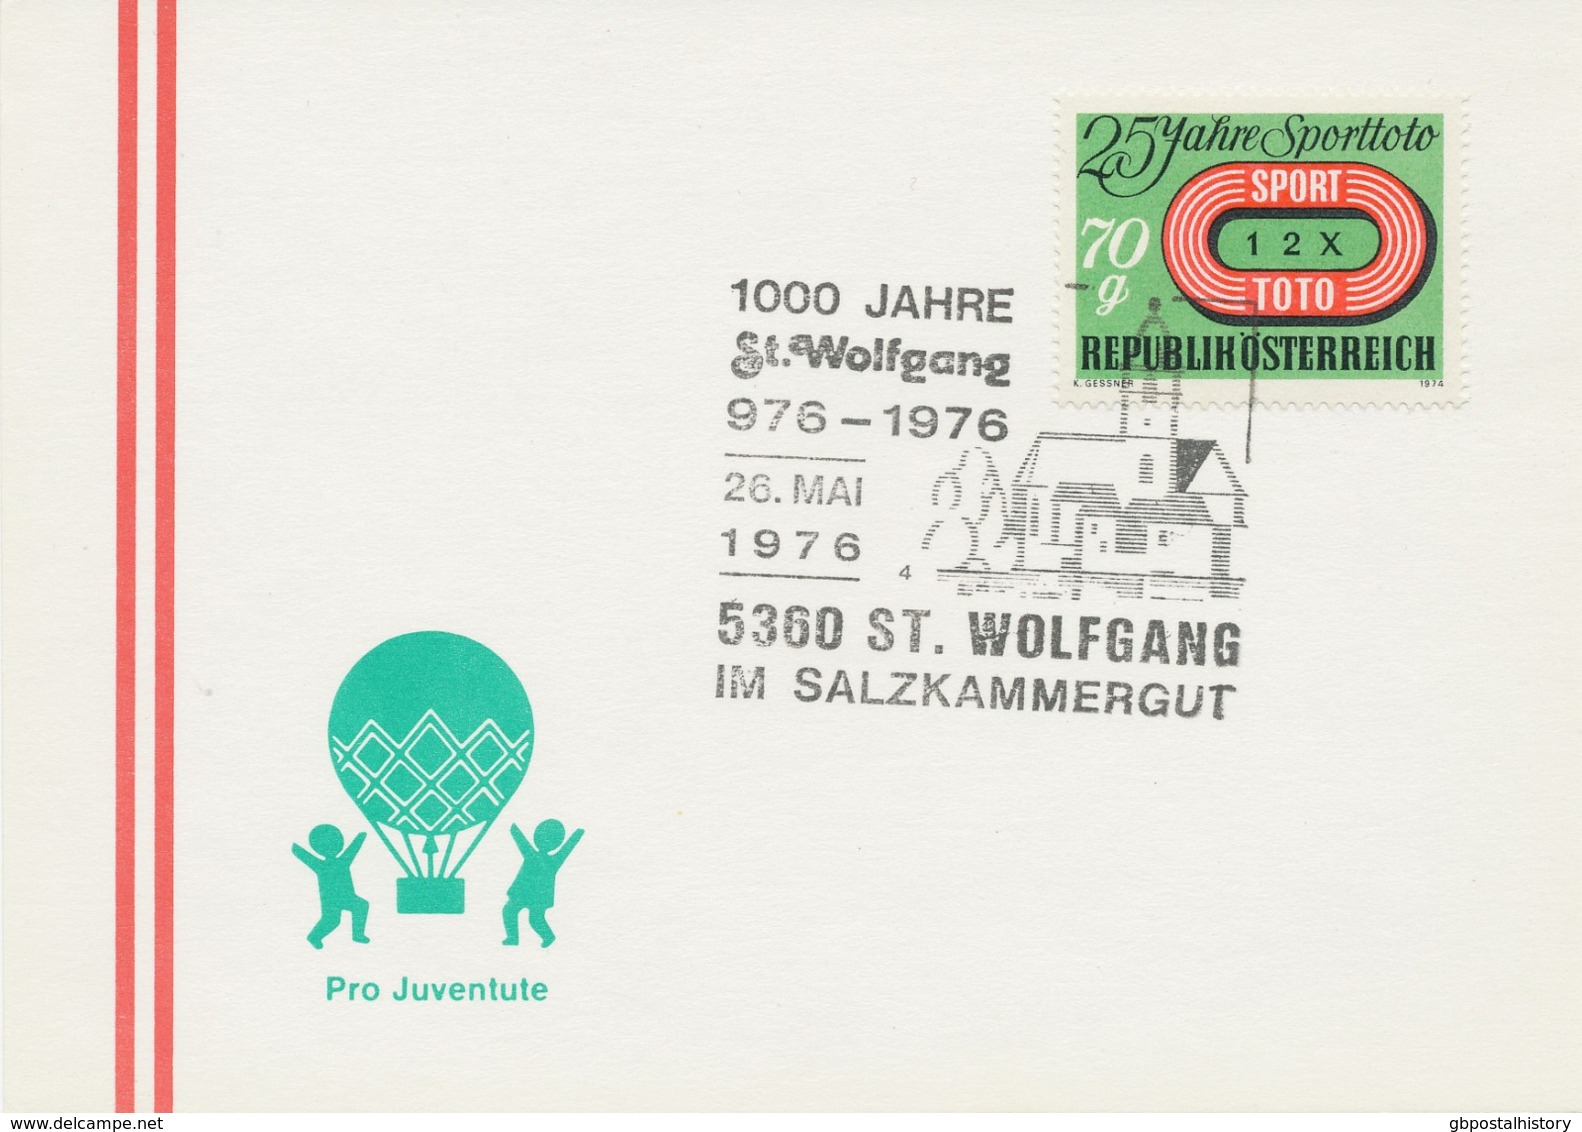 ÖSTERREICH 1976 5360 ST. WOLFGANG IM SALZKAMMERGUT 1000 Jahre St. Wolfgang 976-1976 - Macchine Per Obliterare (EMA)